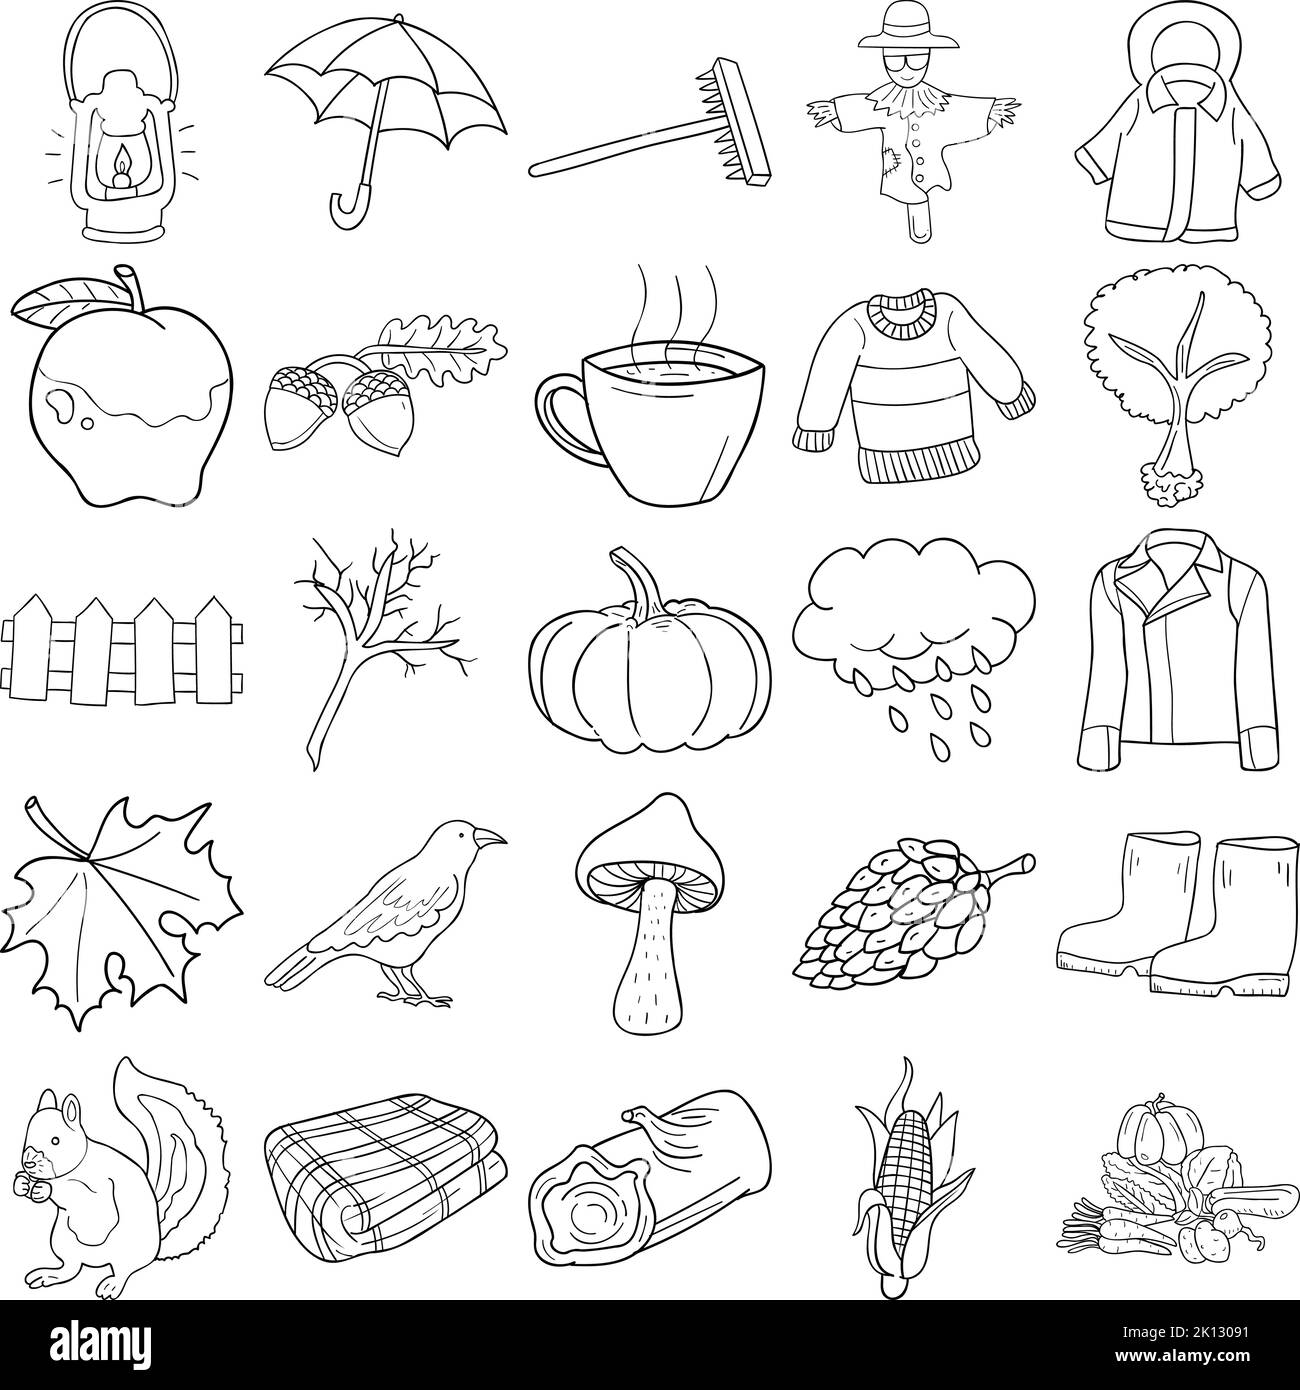 Handgezeichnetes Duodle Line Art Outline-Set Mit Laterne, Regenschirm, Rake, Ernte, Krähe, Kürbis, Ast, Log, Mais, Eichhörnchen, Jacke, Apfel Stock Vektor